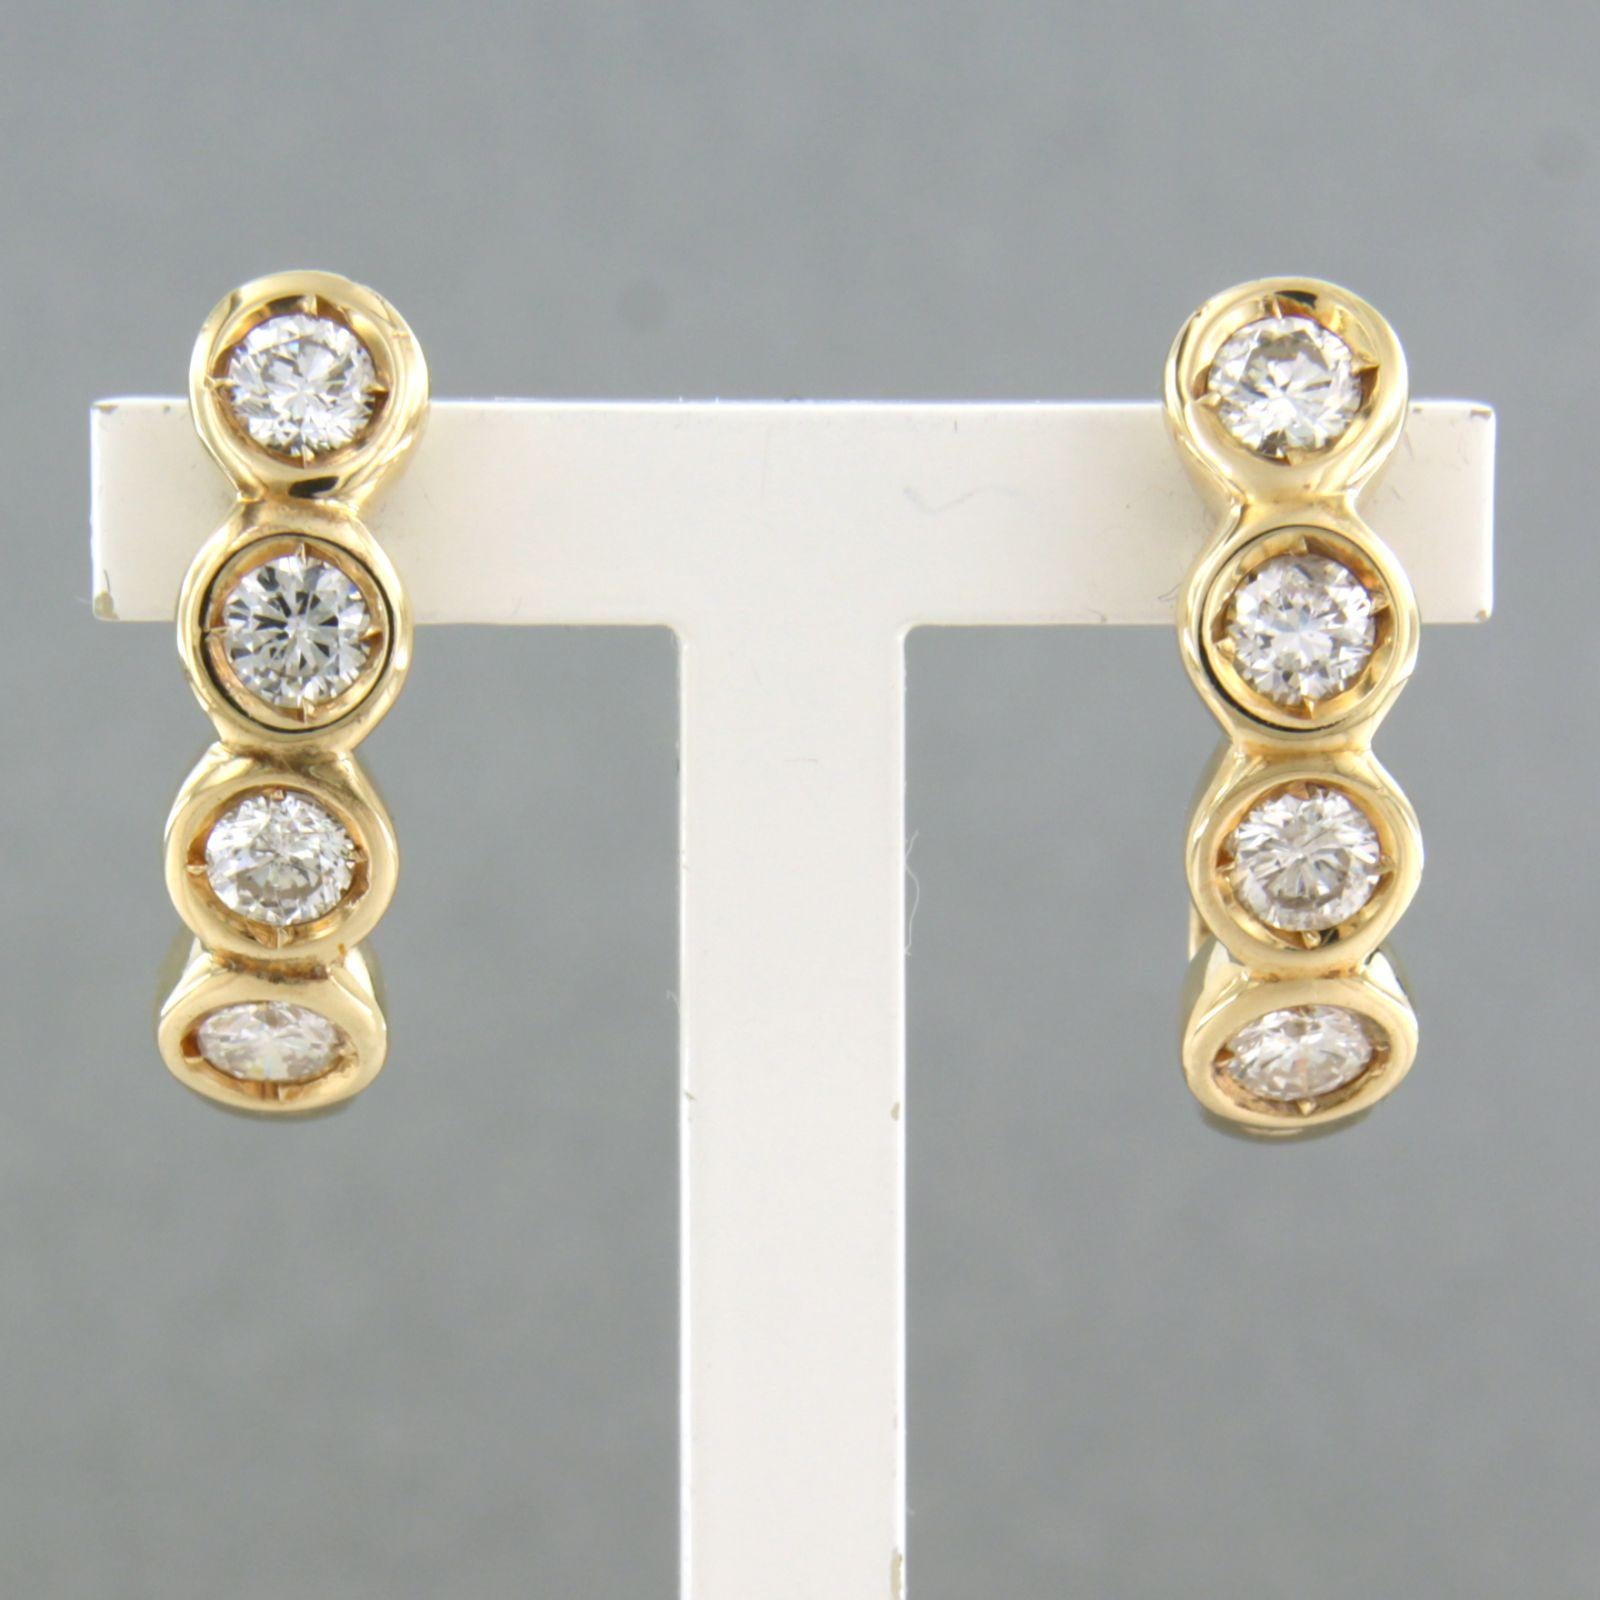 Ohrringe aus 14k Gelbgold mit Diamant im Brillantschliff 1,00ct - F/G - VS/SI

detaillierte Beschreibung:

die Größe der Ohrringe ist 2,0 cm hoch und 0,5 cm breit

Gesamtgewicht 6,0 Gramm

gesetzt mit

- 8 x 3,2 mm große Diamanten im